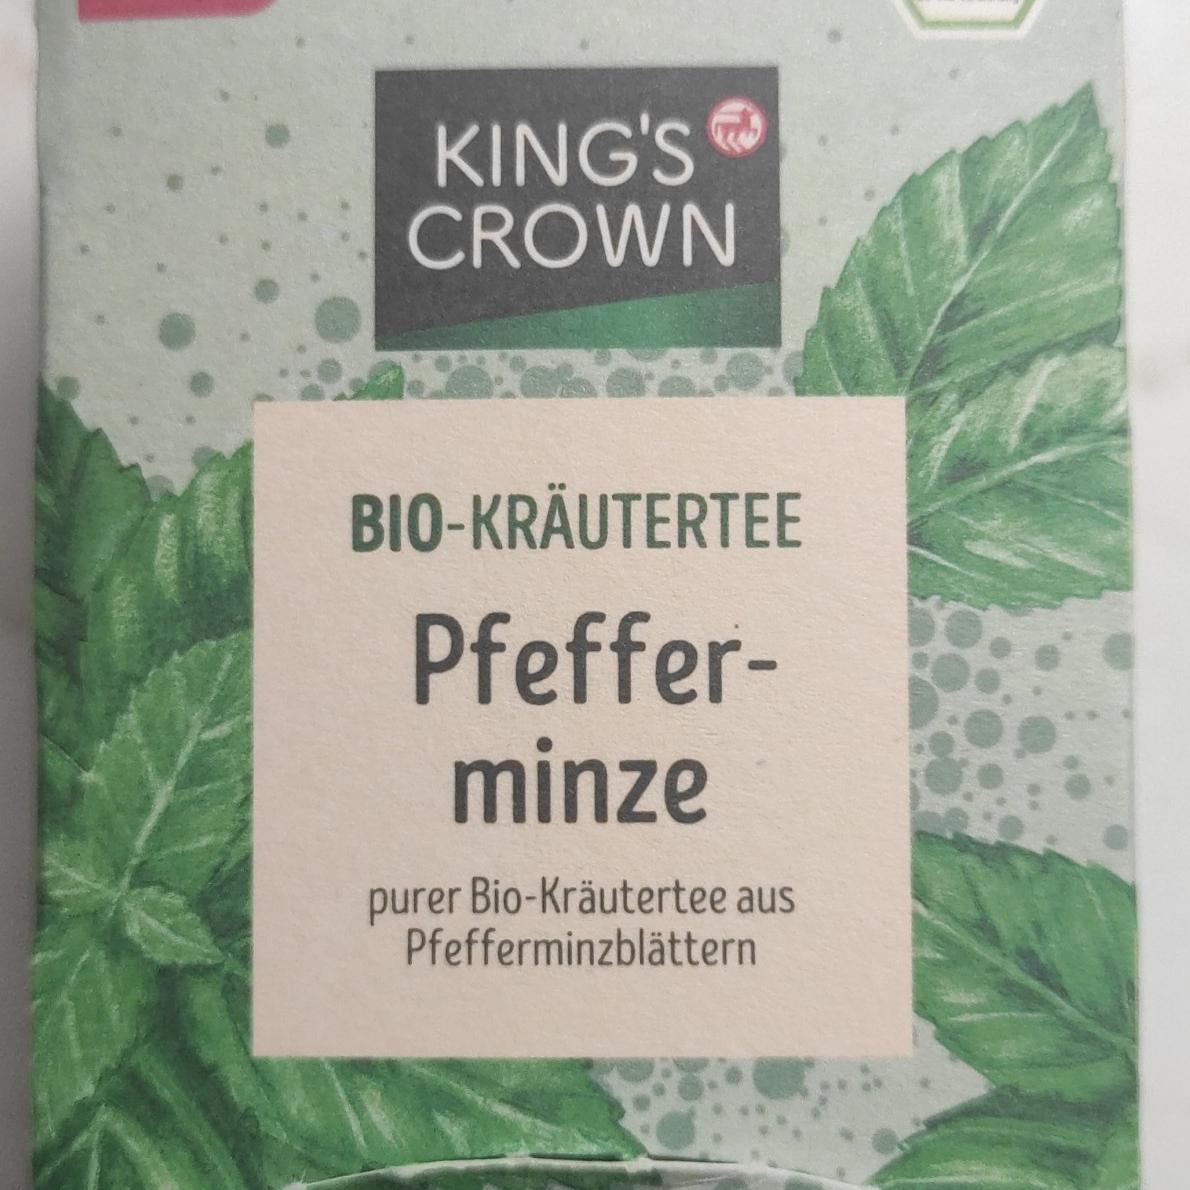 Fotografie - Bio-Kräutertee Pfeffer-minze Kings's Crown